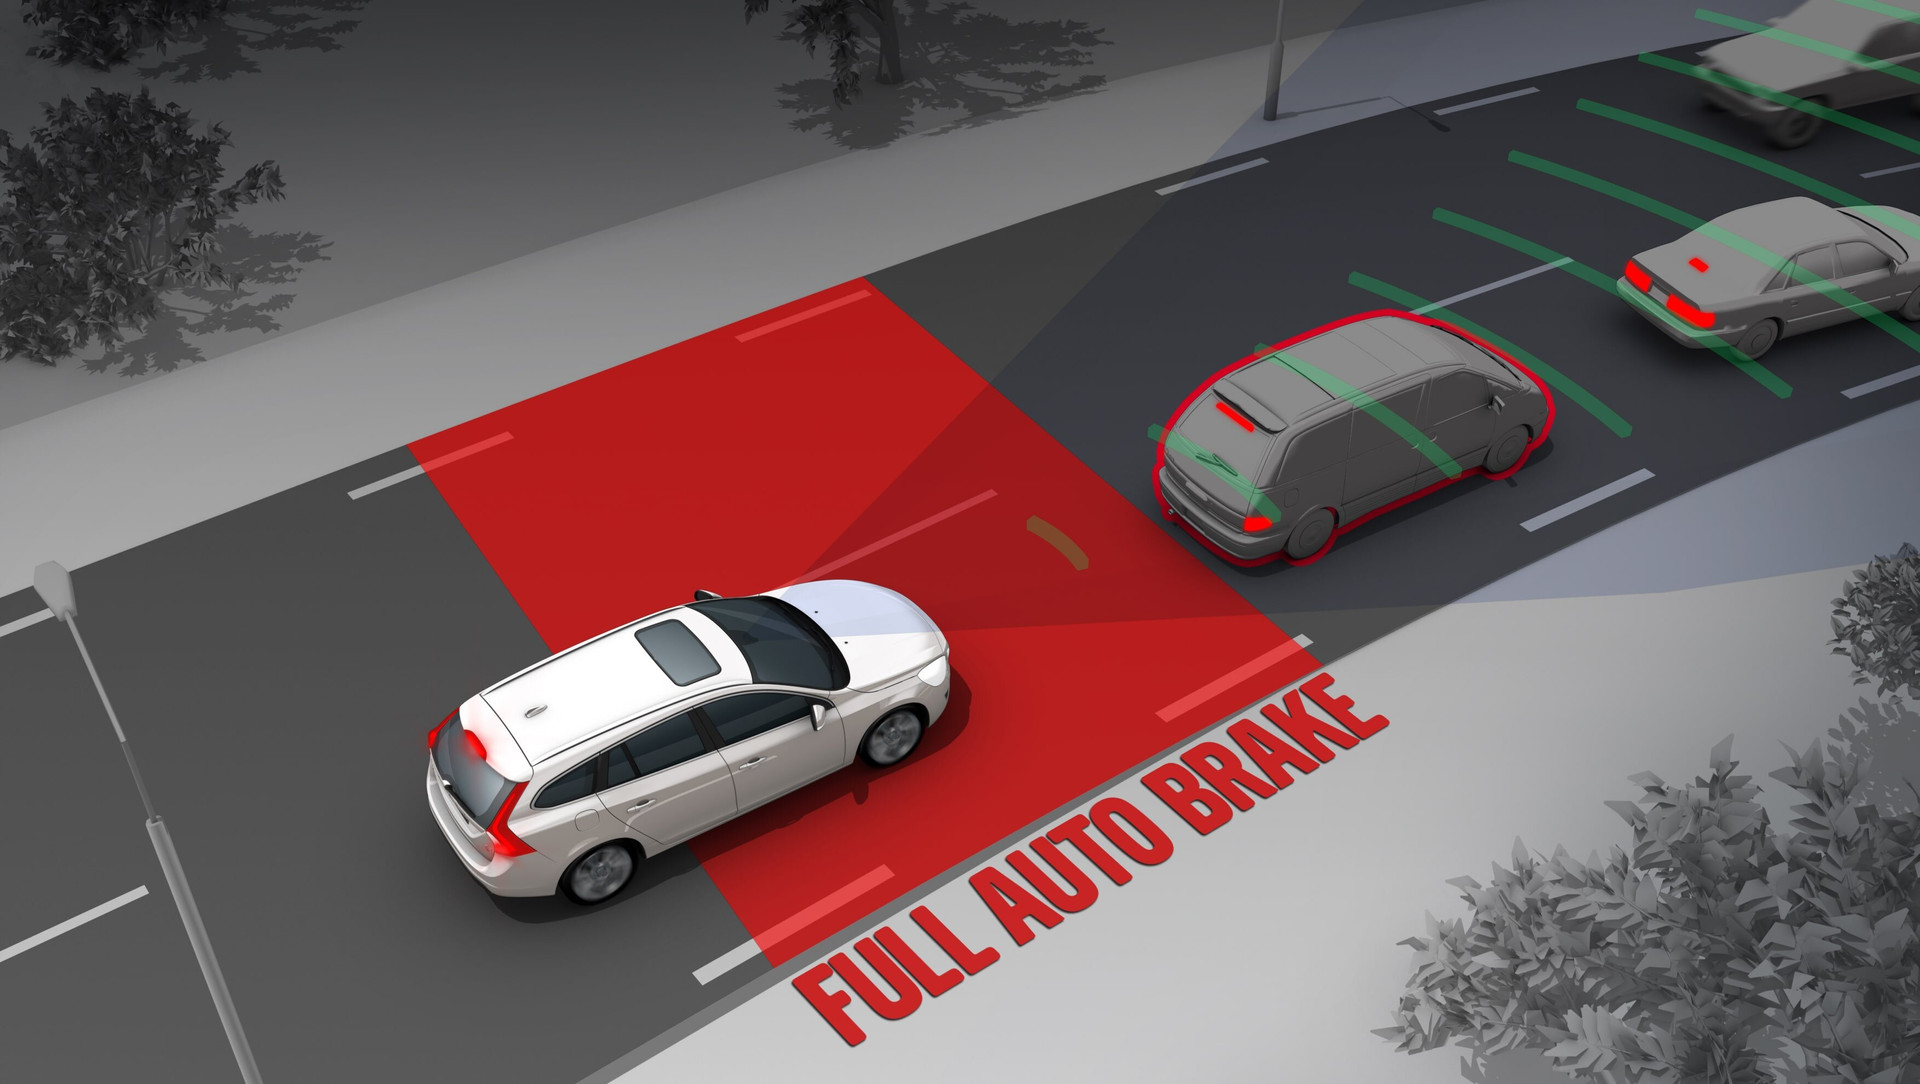 Hệ thống phanh tự động khẩn cấp là một công cụ hỗ trợ lái xe an toàn hơn, nhưng tài xế vẫn đóng vai trò quan trọng trong việc duy trì an toàn giao thông. (Ảnh: CarsGuide)